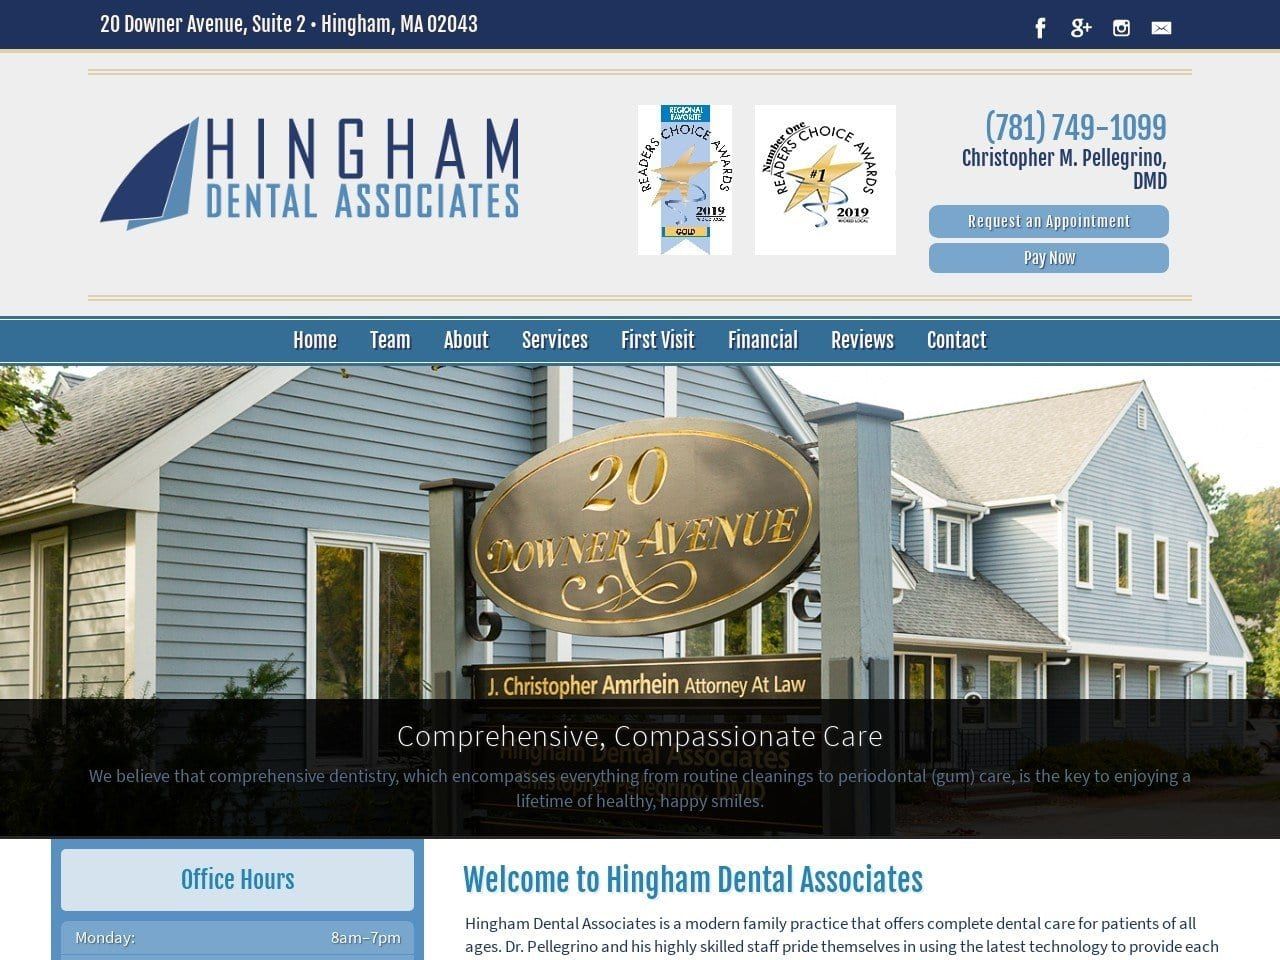 Hingham Dental Associates Website Screenshot from familydentisthingham.com